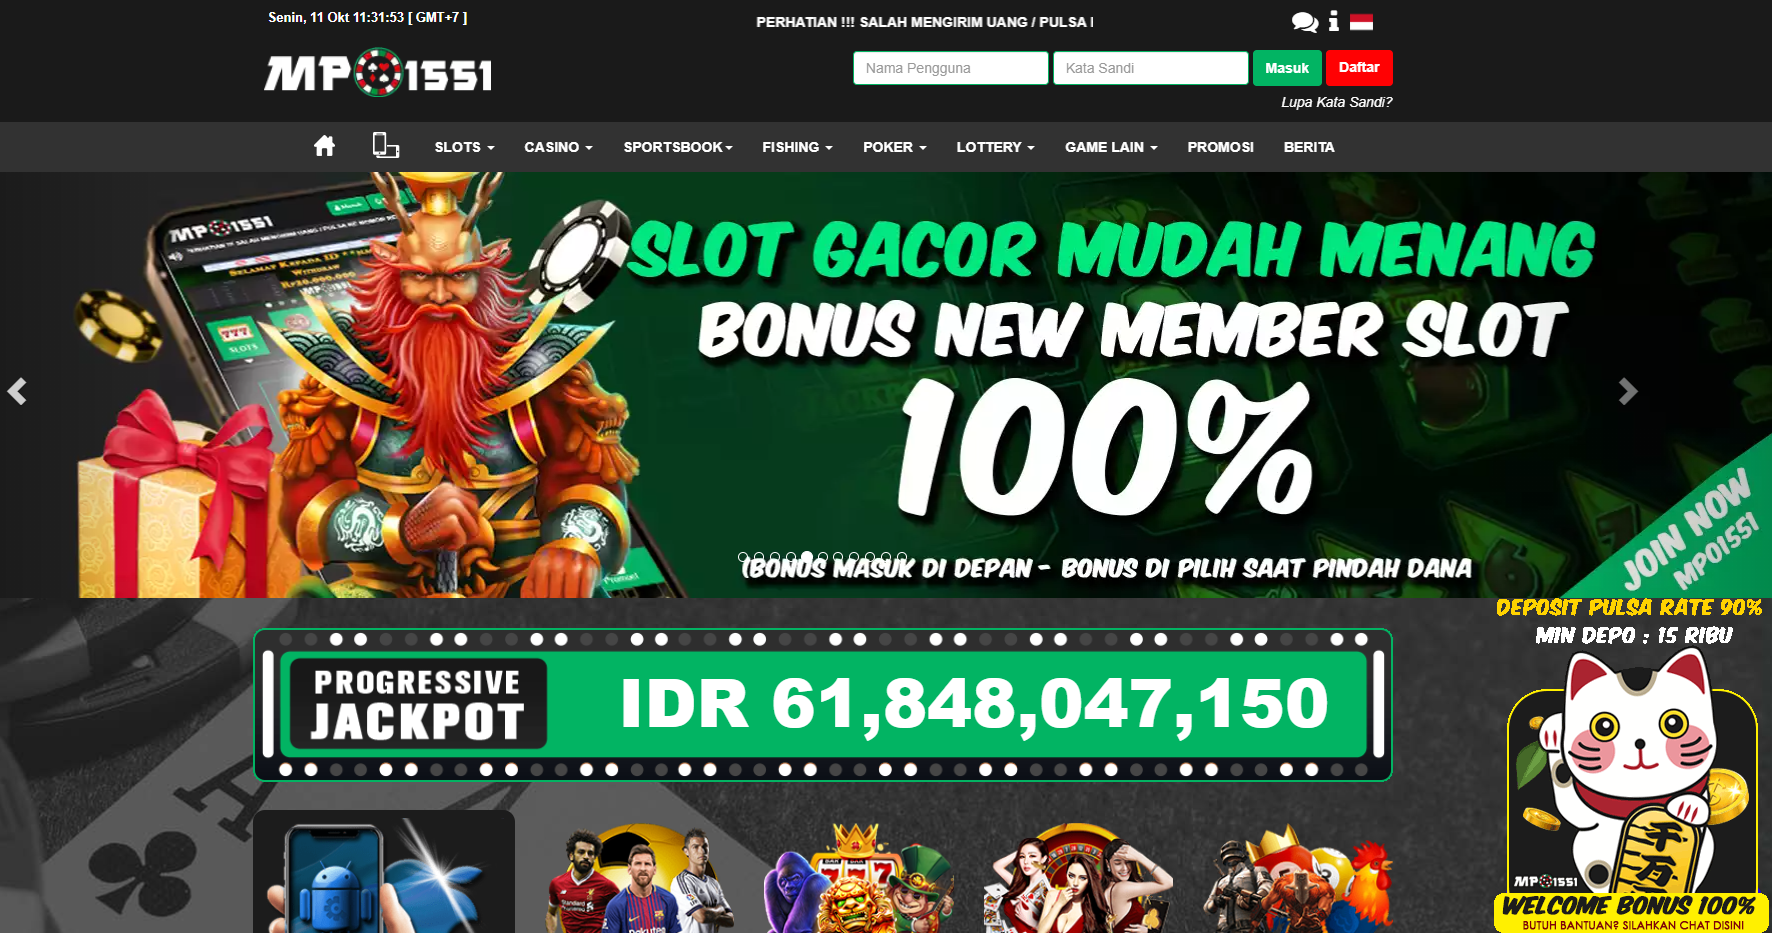 MPO1551 Situs Judi Slot Online Deposit Dana Terbaru